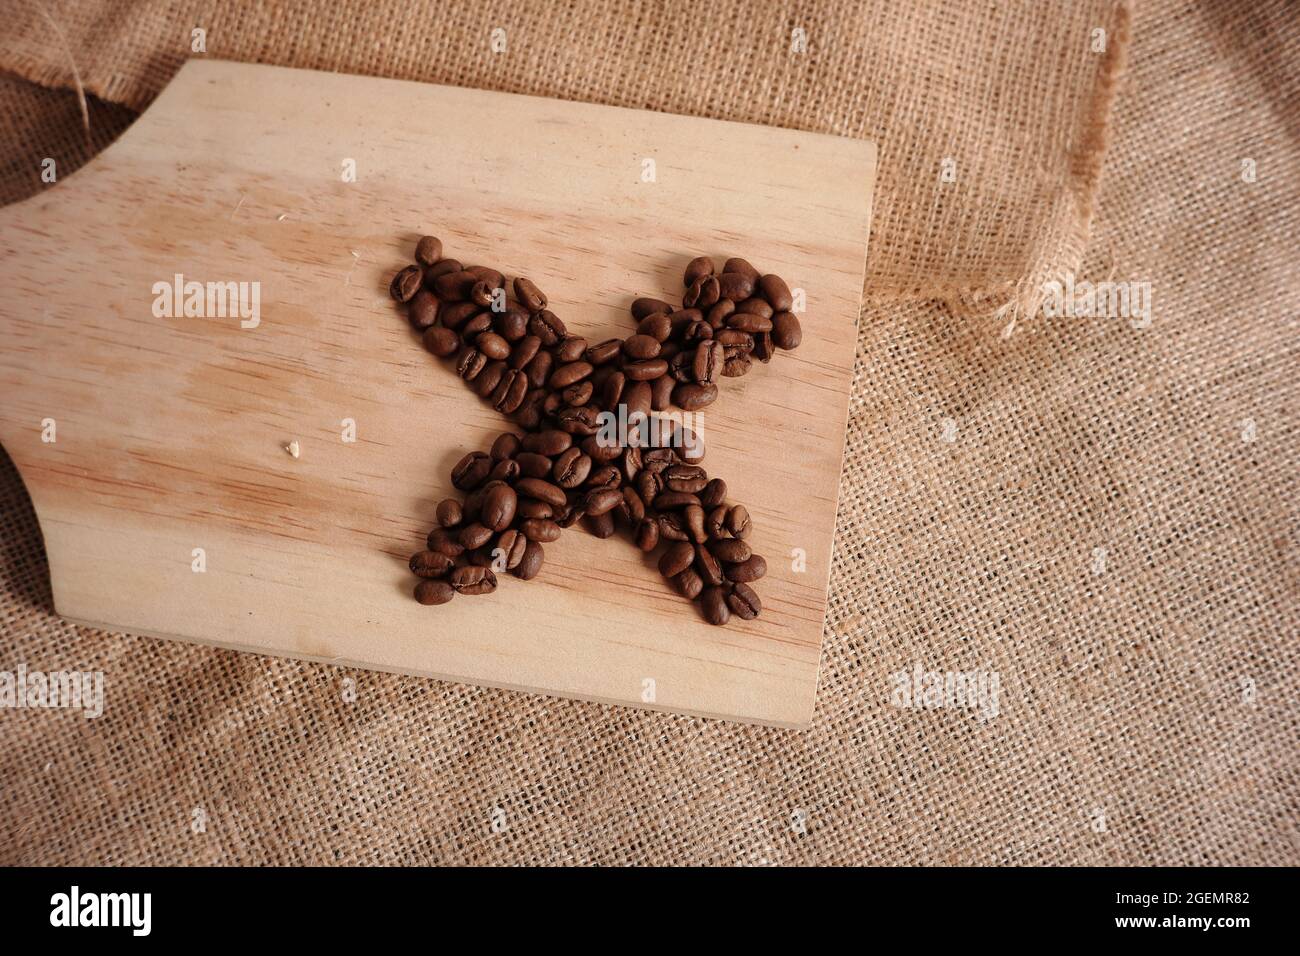 granos de café en forma de cruz sobre una tabla de corte de madera sobre un fondo de madrigueras. concepto minimalista de fotos de comida o bebida para materiales de diseño, escritura Foto de stock